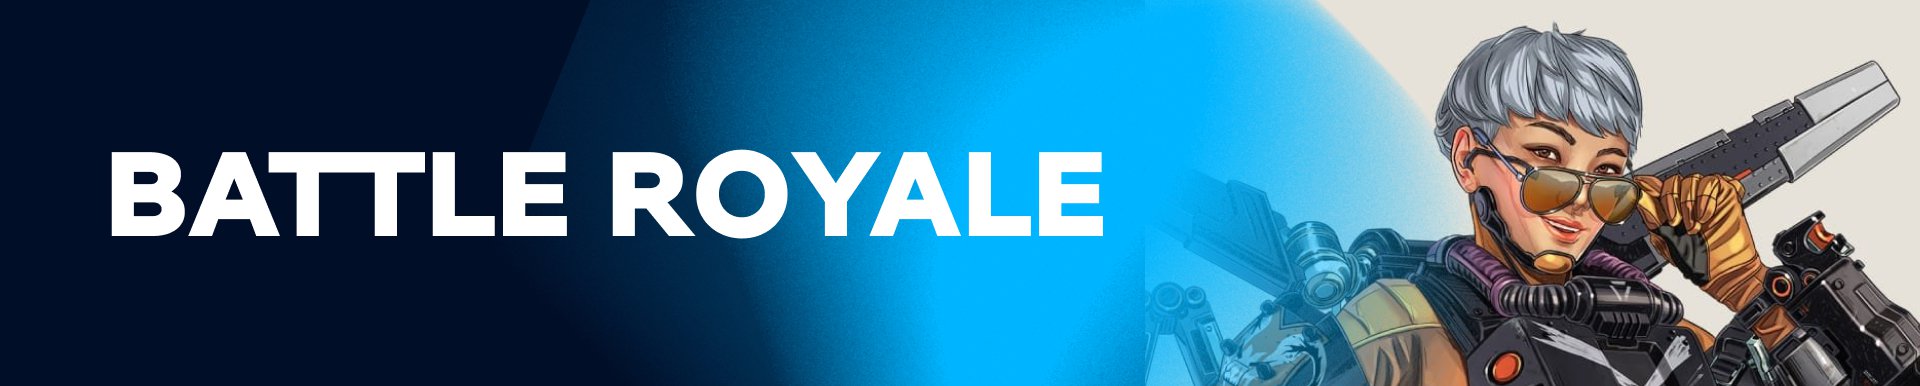 Battle Royale. Image: WePlay Holding